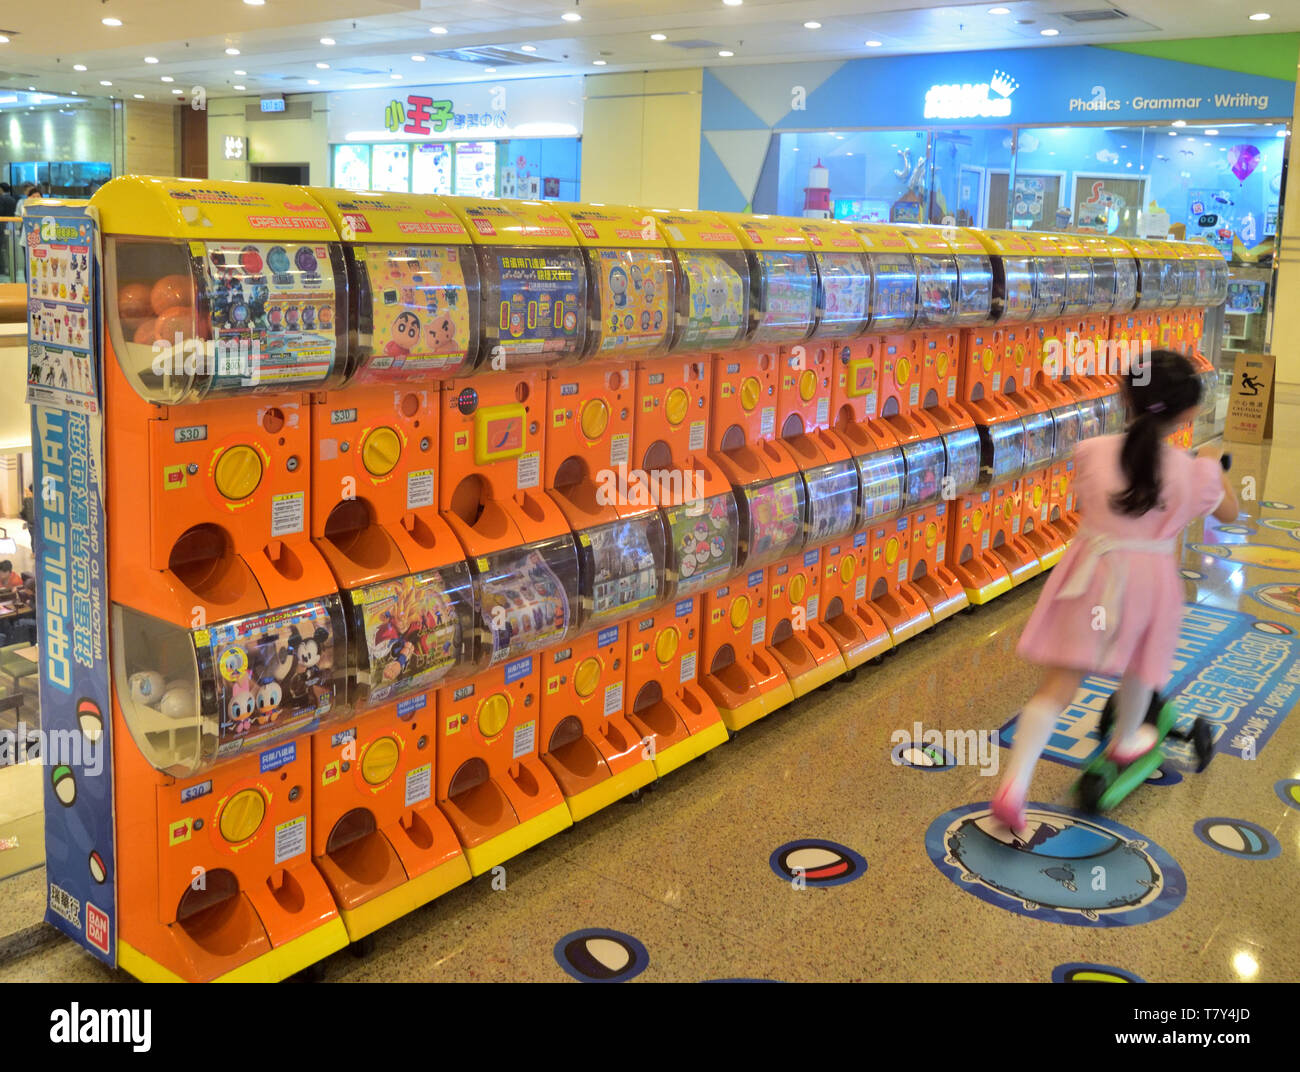 Das kleine Mädchen fährt mit einem Roller, um an einer Reihe von Kapselautomaten in der Einkaufspassage in Hongkong vorbeizu laufen Stockfoto